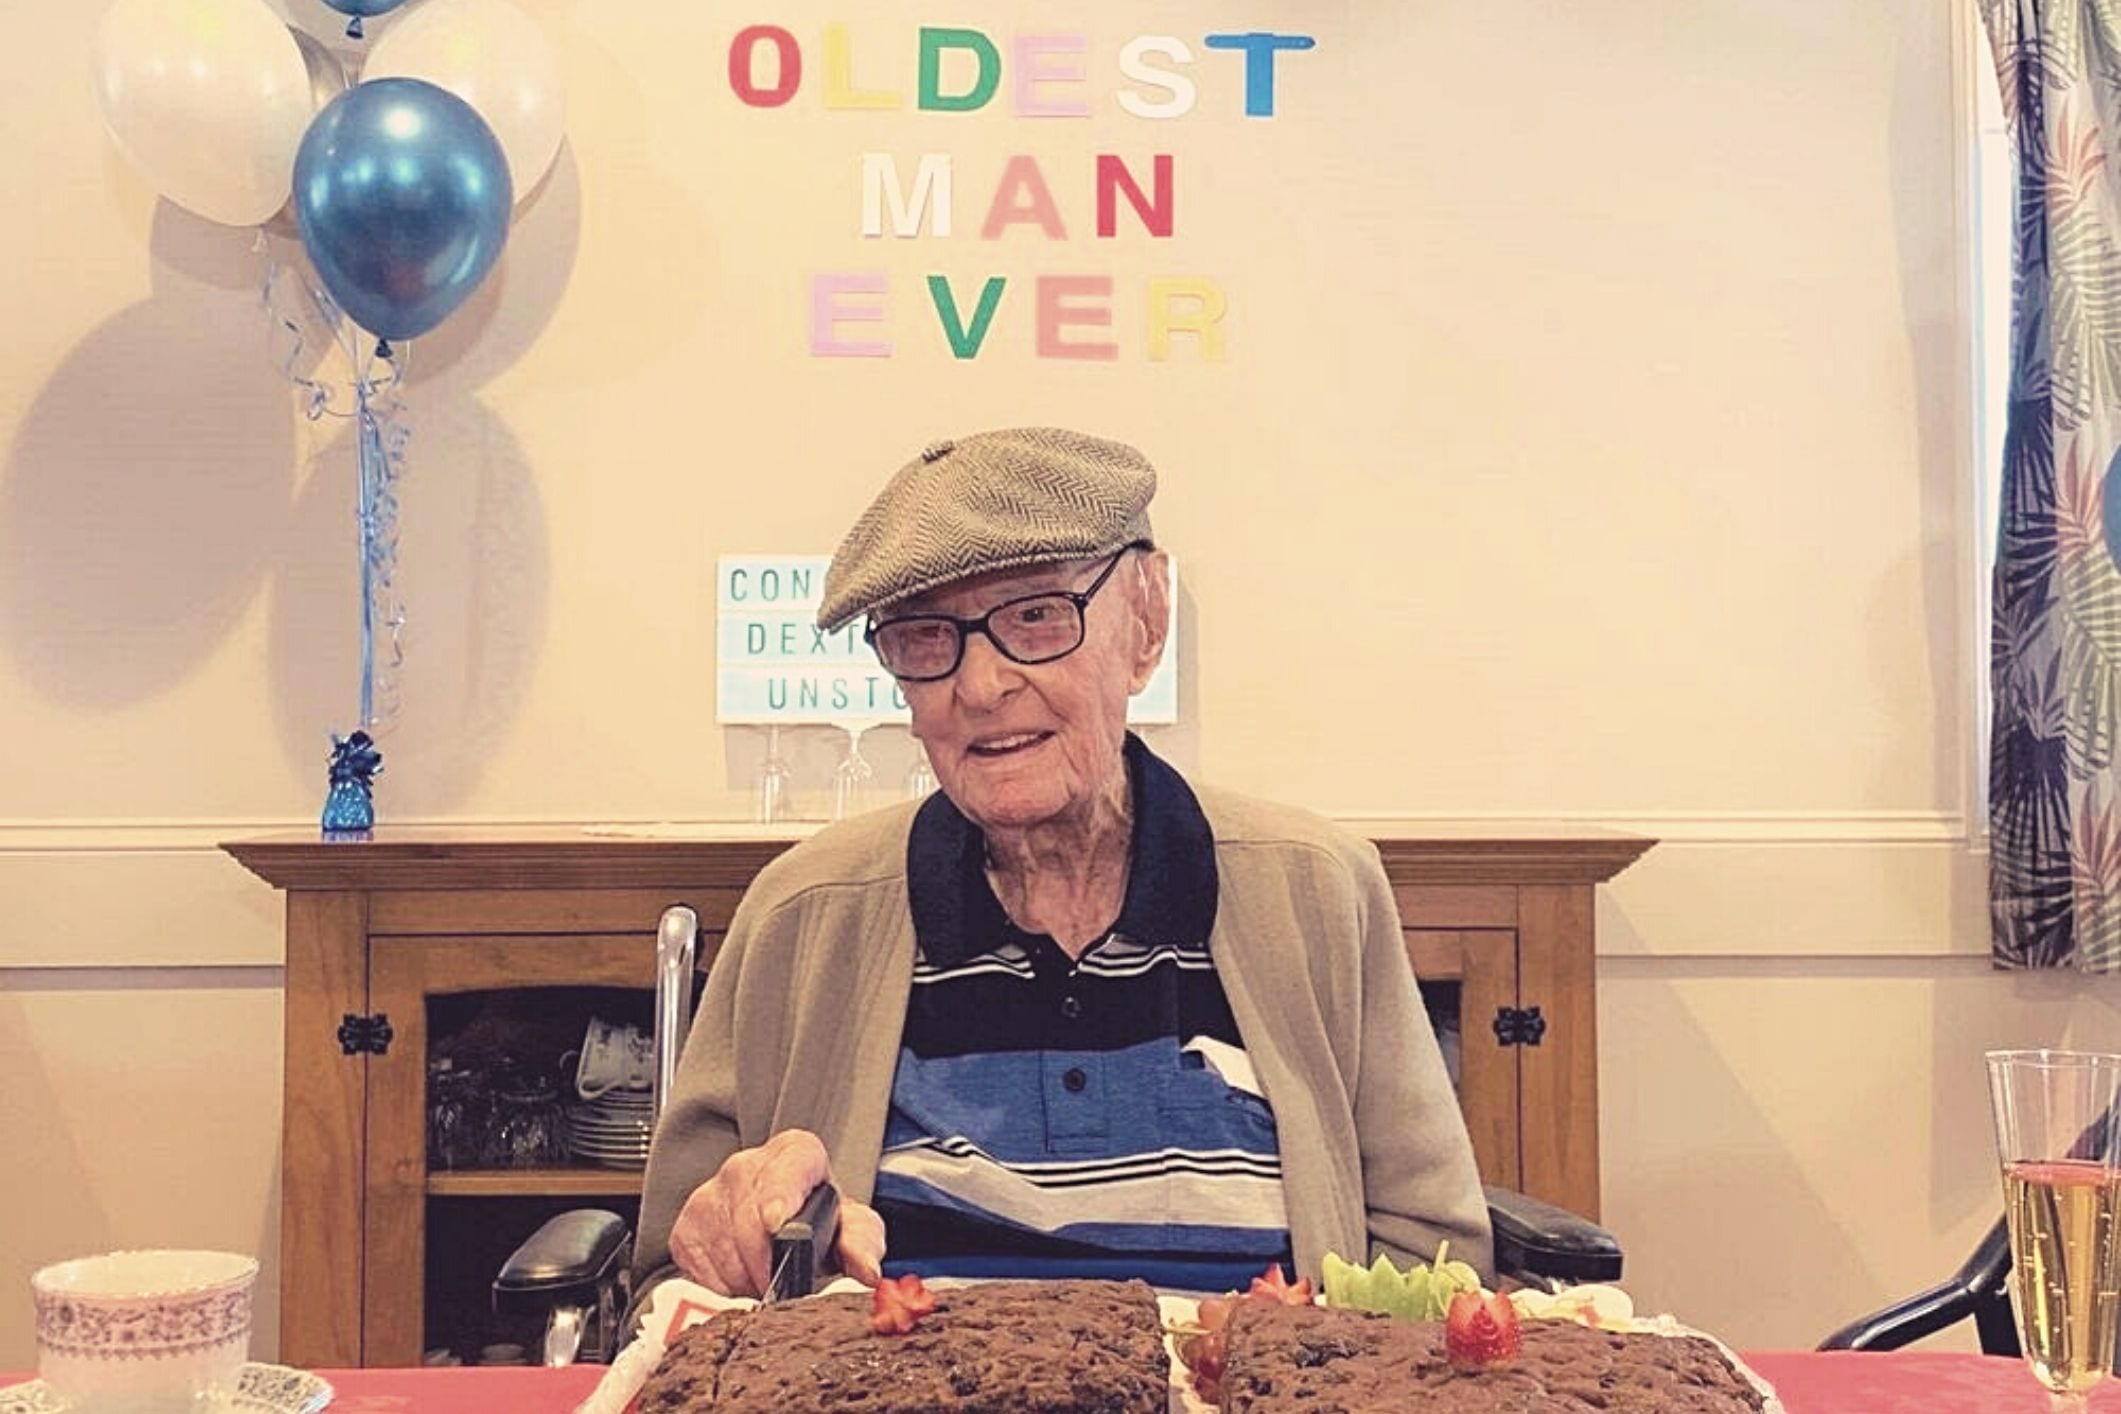 Dexter 111yo - oldest man in Australia